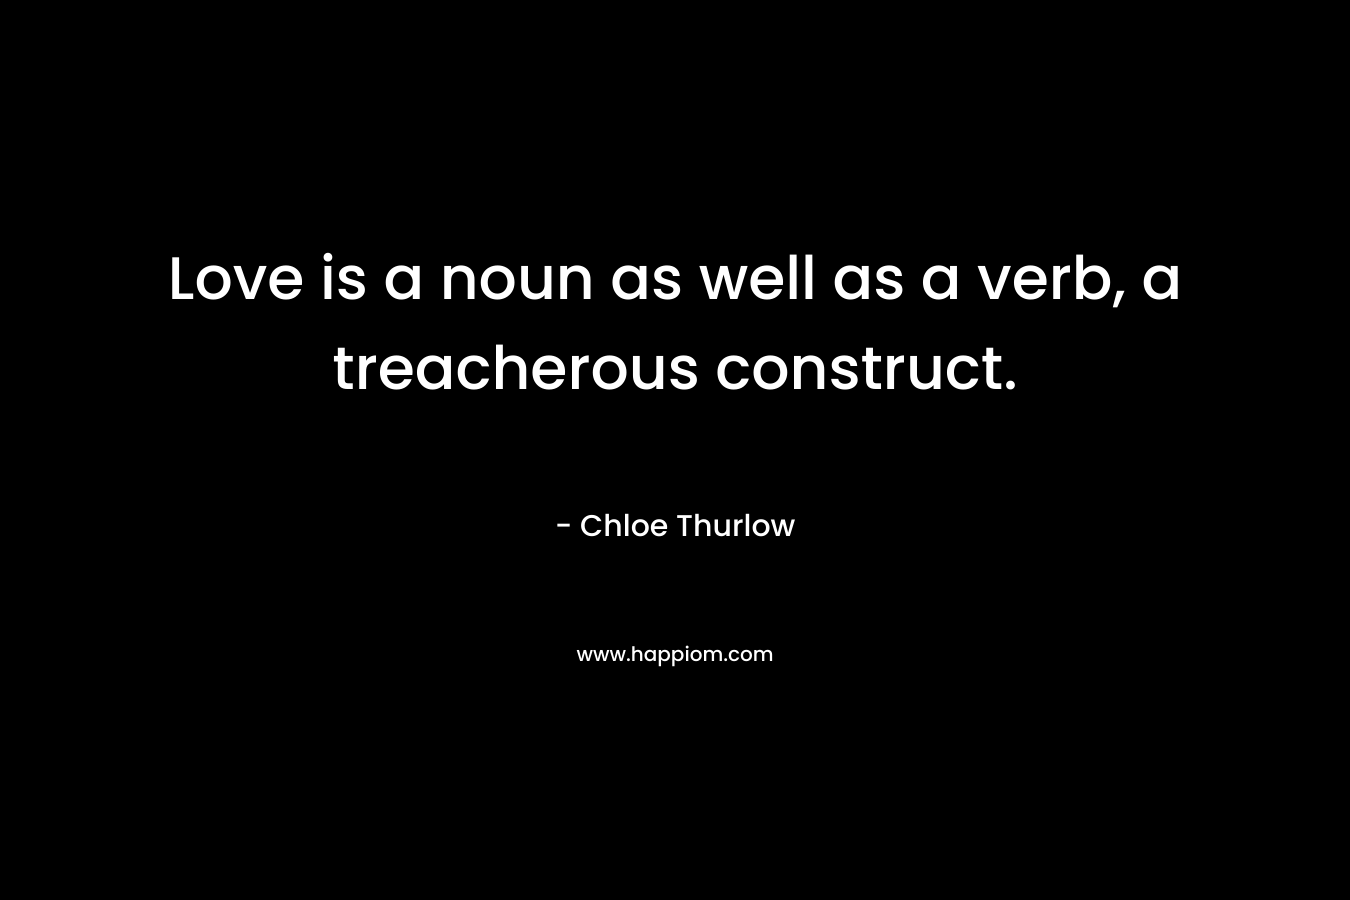 Love is a noun as well as a verb, a treacherous construct.